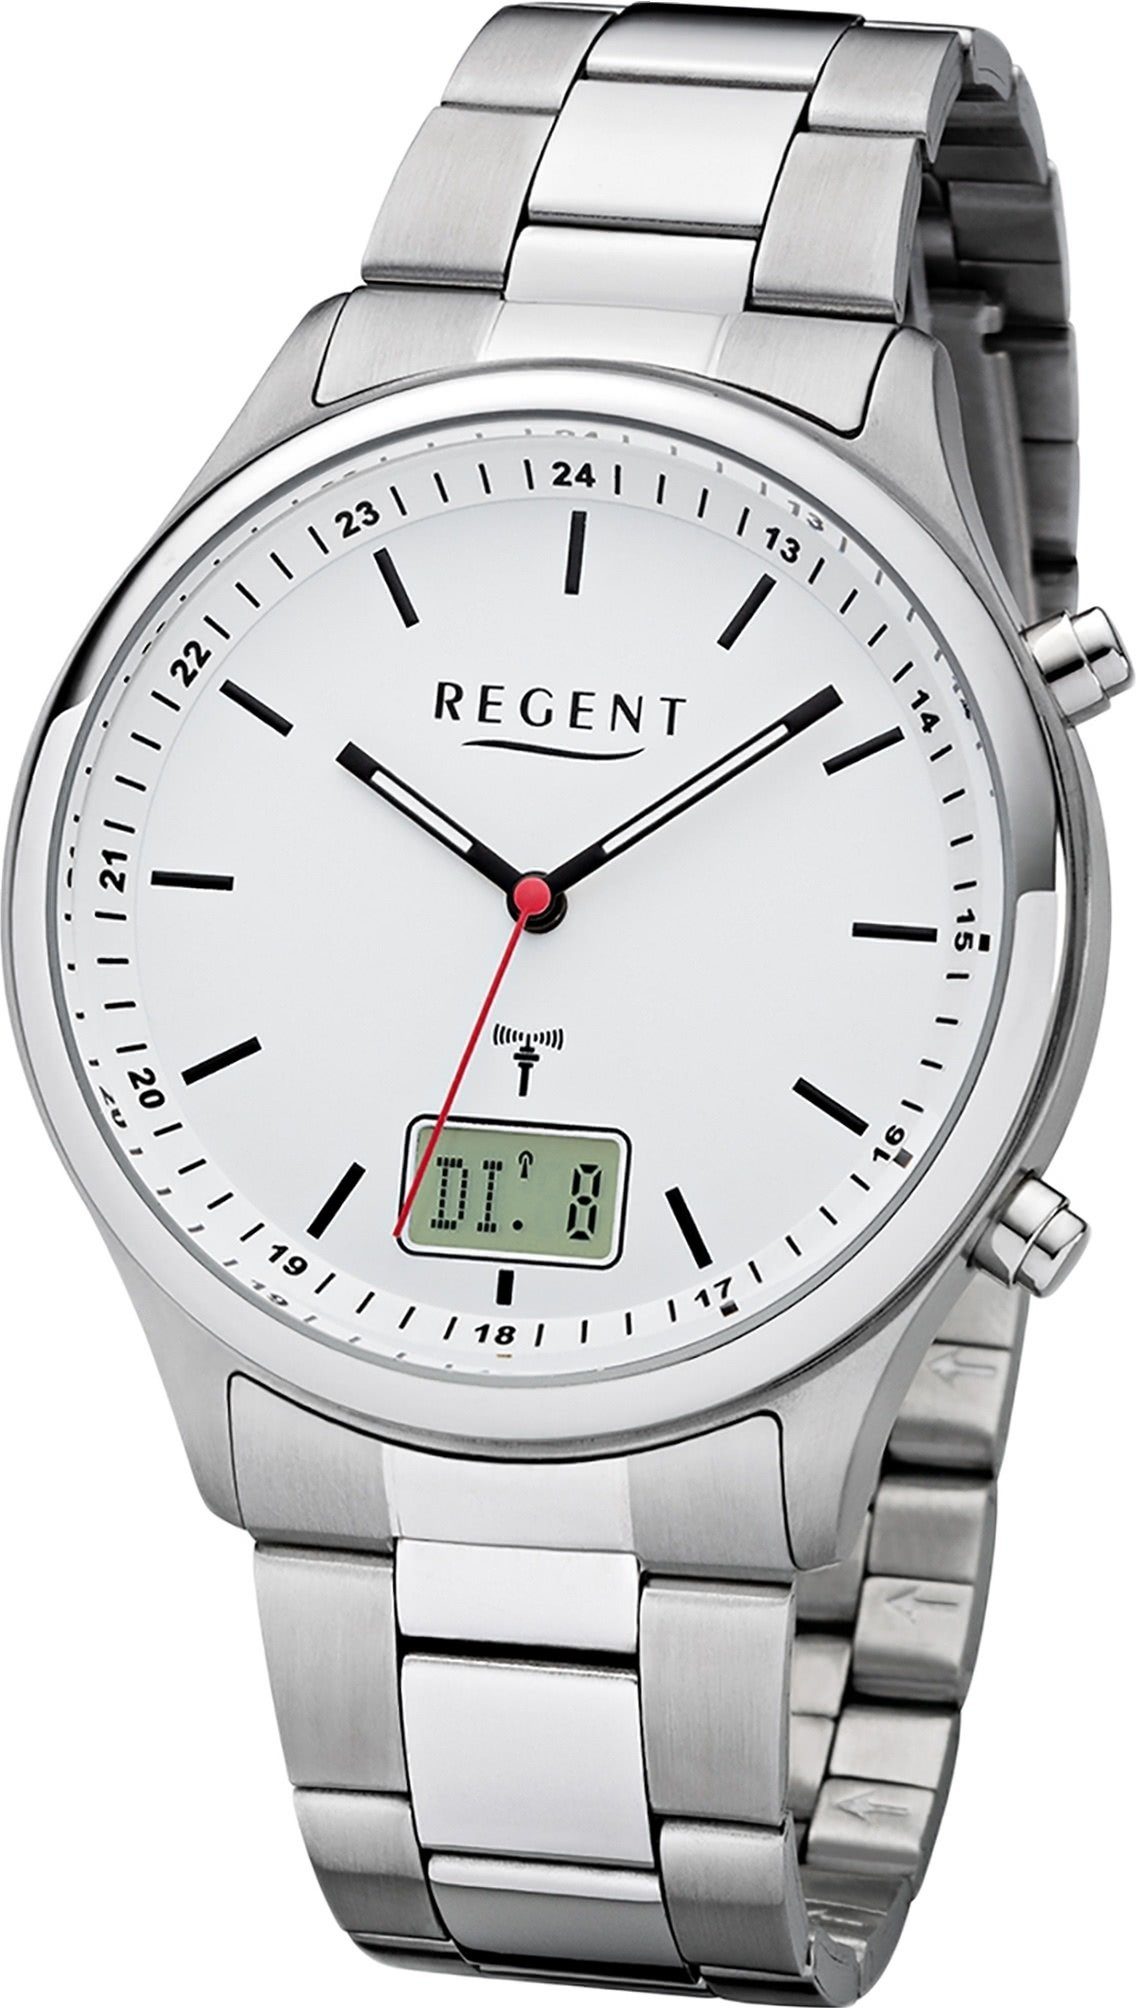 Regent Funkuhr Regent Metall Herren Uhr BA-448, Herrenuhr Metallarmband silber, rundes Gehäuse, groß (ca. 40mm)